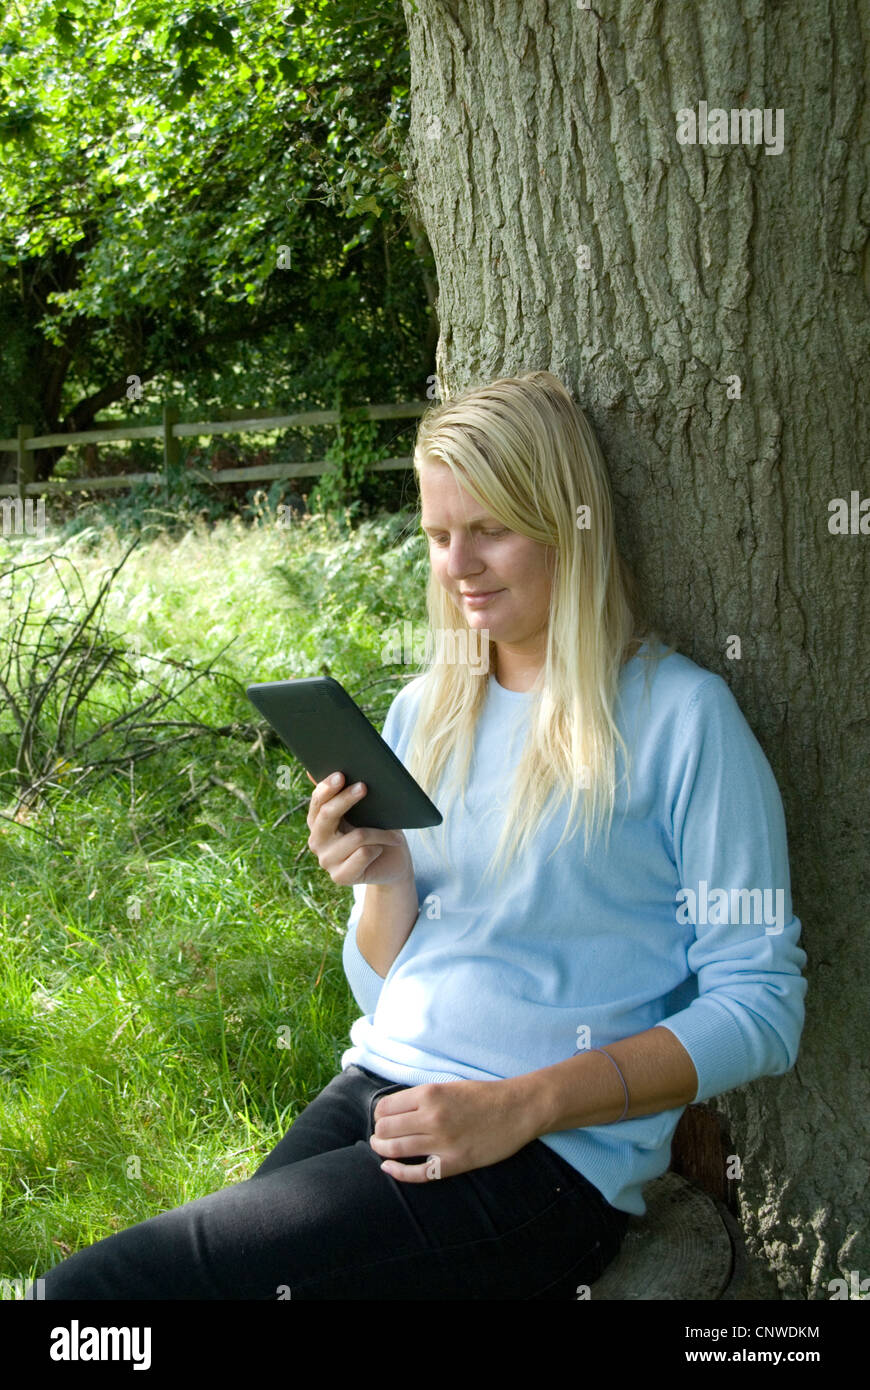 Blonde Mädchen liest einen Amazon Kindle elektronische e-Reader im Freien an einen Baum Hayley Williamson Herr gelehnt Stockfoto